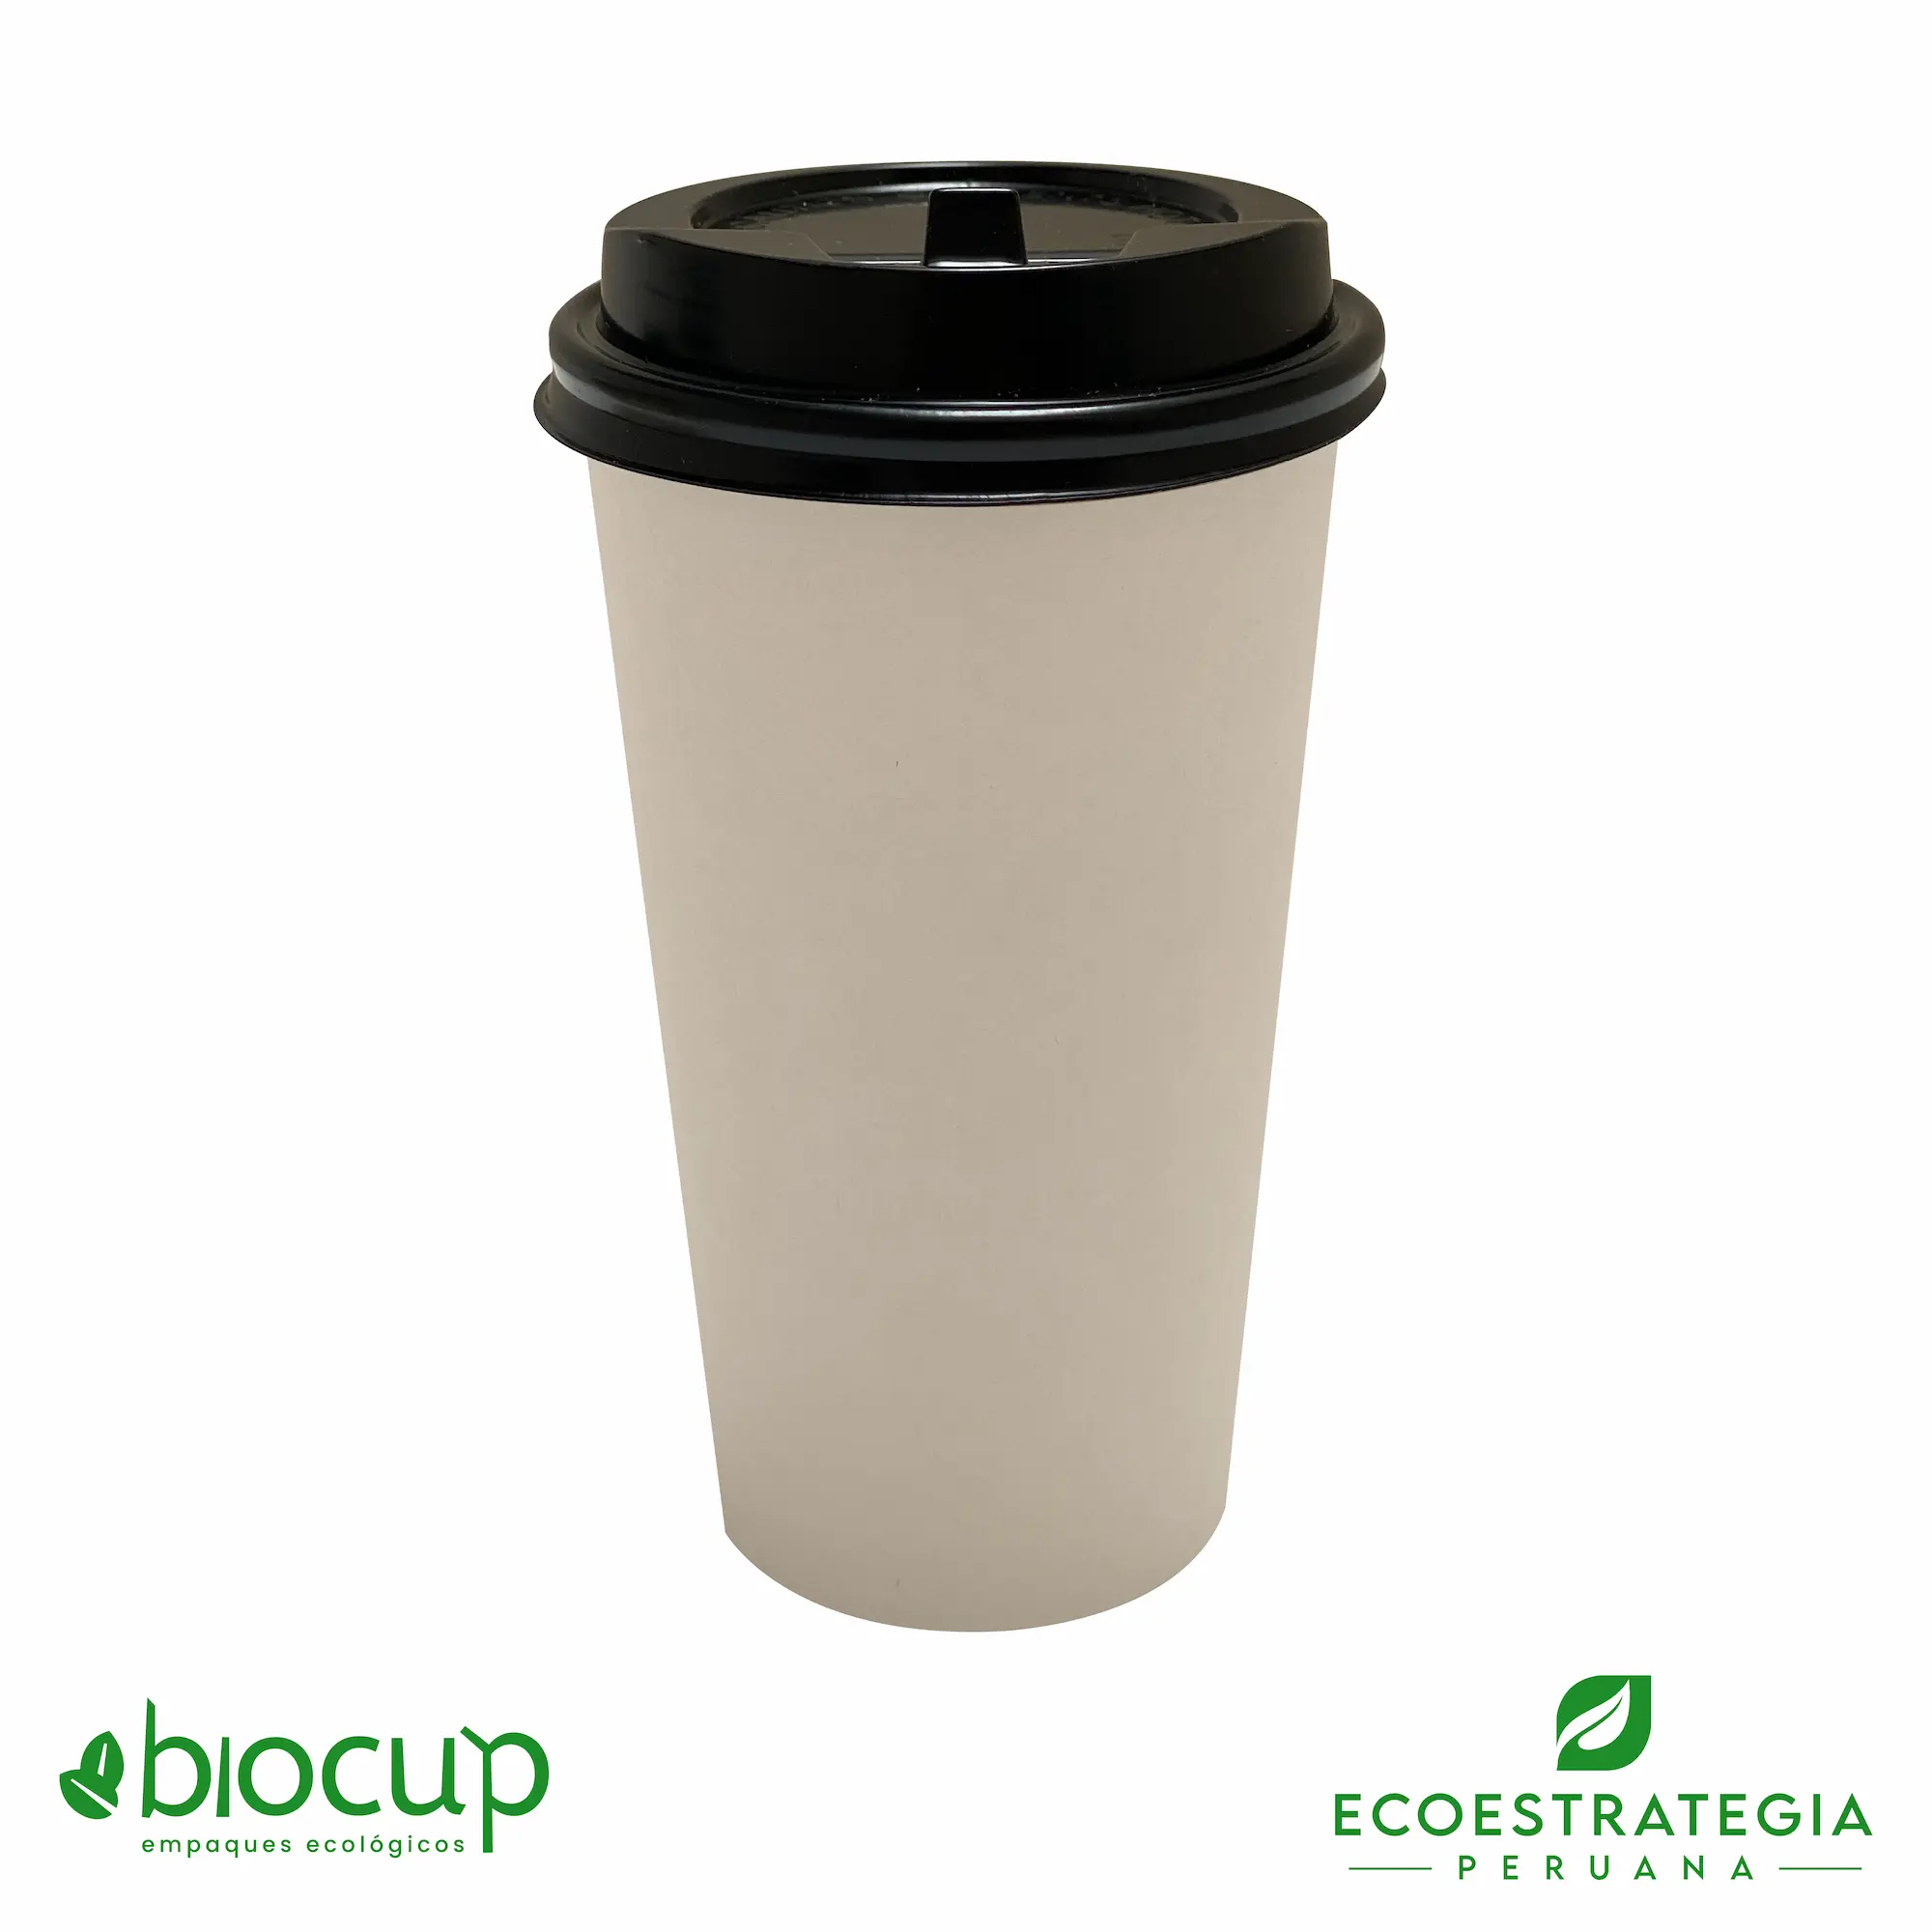 Vasos reciclable para bebidas calientes EP-B16 también conocido como vasos de bambú biodegradables 16 oz, vasos compostable 16 oz, vaso desechable bambú, vasos biodegradable de bambú por mayor, vaso compostable 16 oz , vaso bambú, vaso bioform 16 oz, vaso bioform 12 oz, vaso pamolsa biodegradable, vaso por mayor, vaso compostable marrón, vasos para café Perú, vasos personalizable biodegradable, vaso hermético para delivery, vasos biodegradables para delivery, mayoristas de vasos biodegradables, distribuidores de vasos biodegradables, importadores de vasos biodegradables, vasos biodegradables eco estrategia peruana.